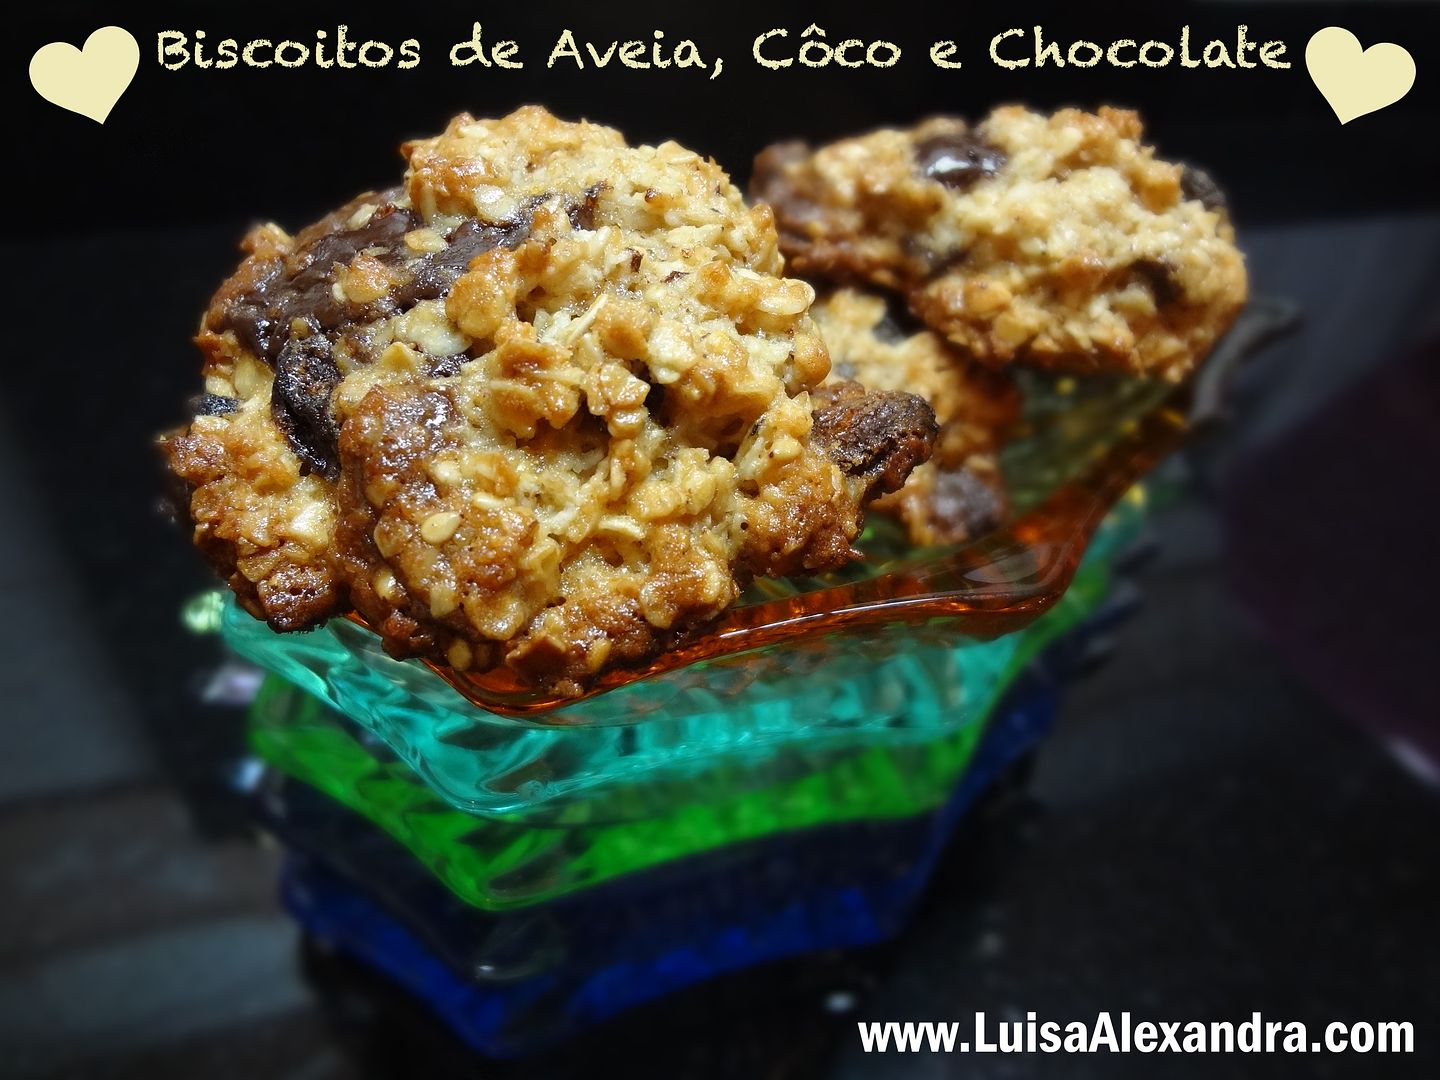 Biscoitos de Aveia com coco e chocolate photo DSC05637.jpg